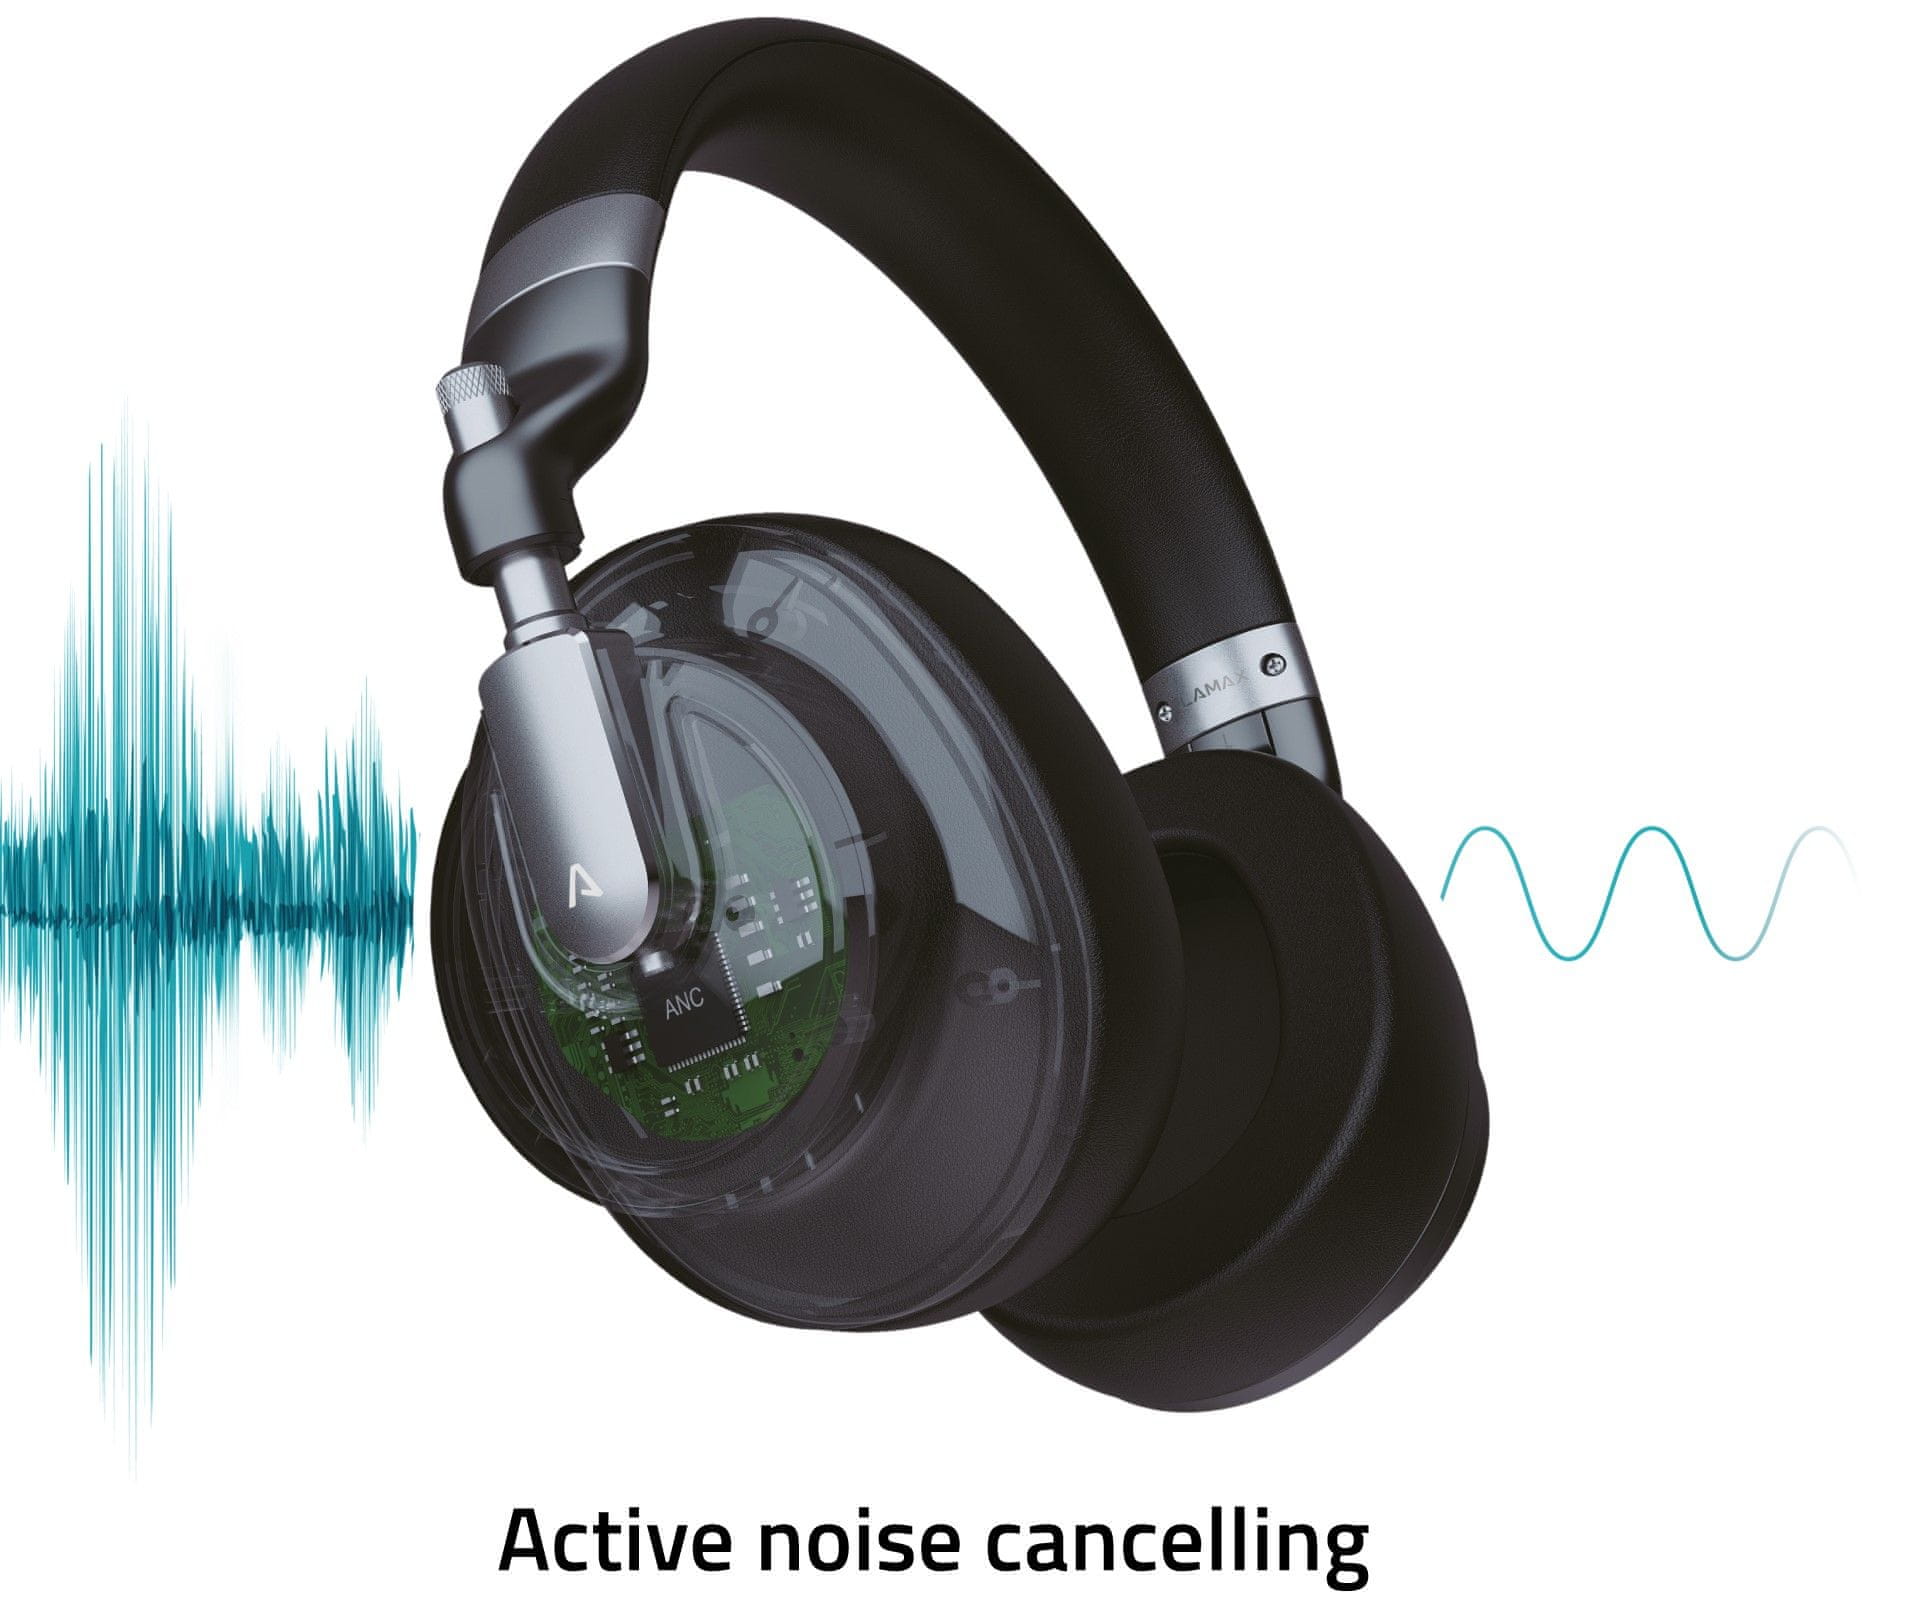  Moderne Bluetooth naglavne slušalke LAMAX Highcomfort ANC imajo USB-C priključek za polnjenje s funkcijo za hitro polnjenje. Baterija zdrži 50 ur. Udobne so na ušesih. Vključujejo handsfree (prostoročen) mikrofon. 